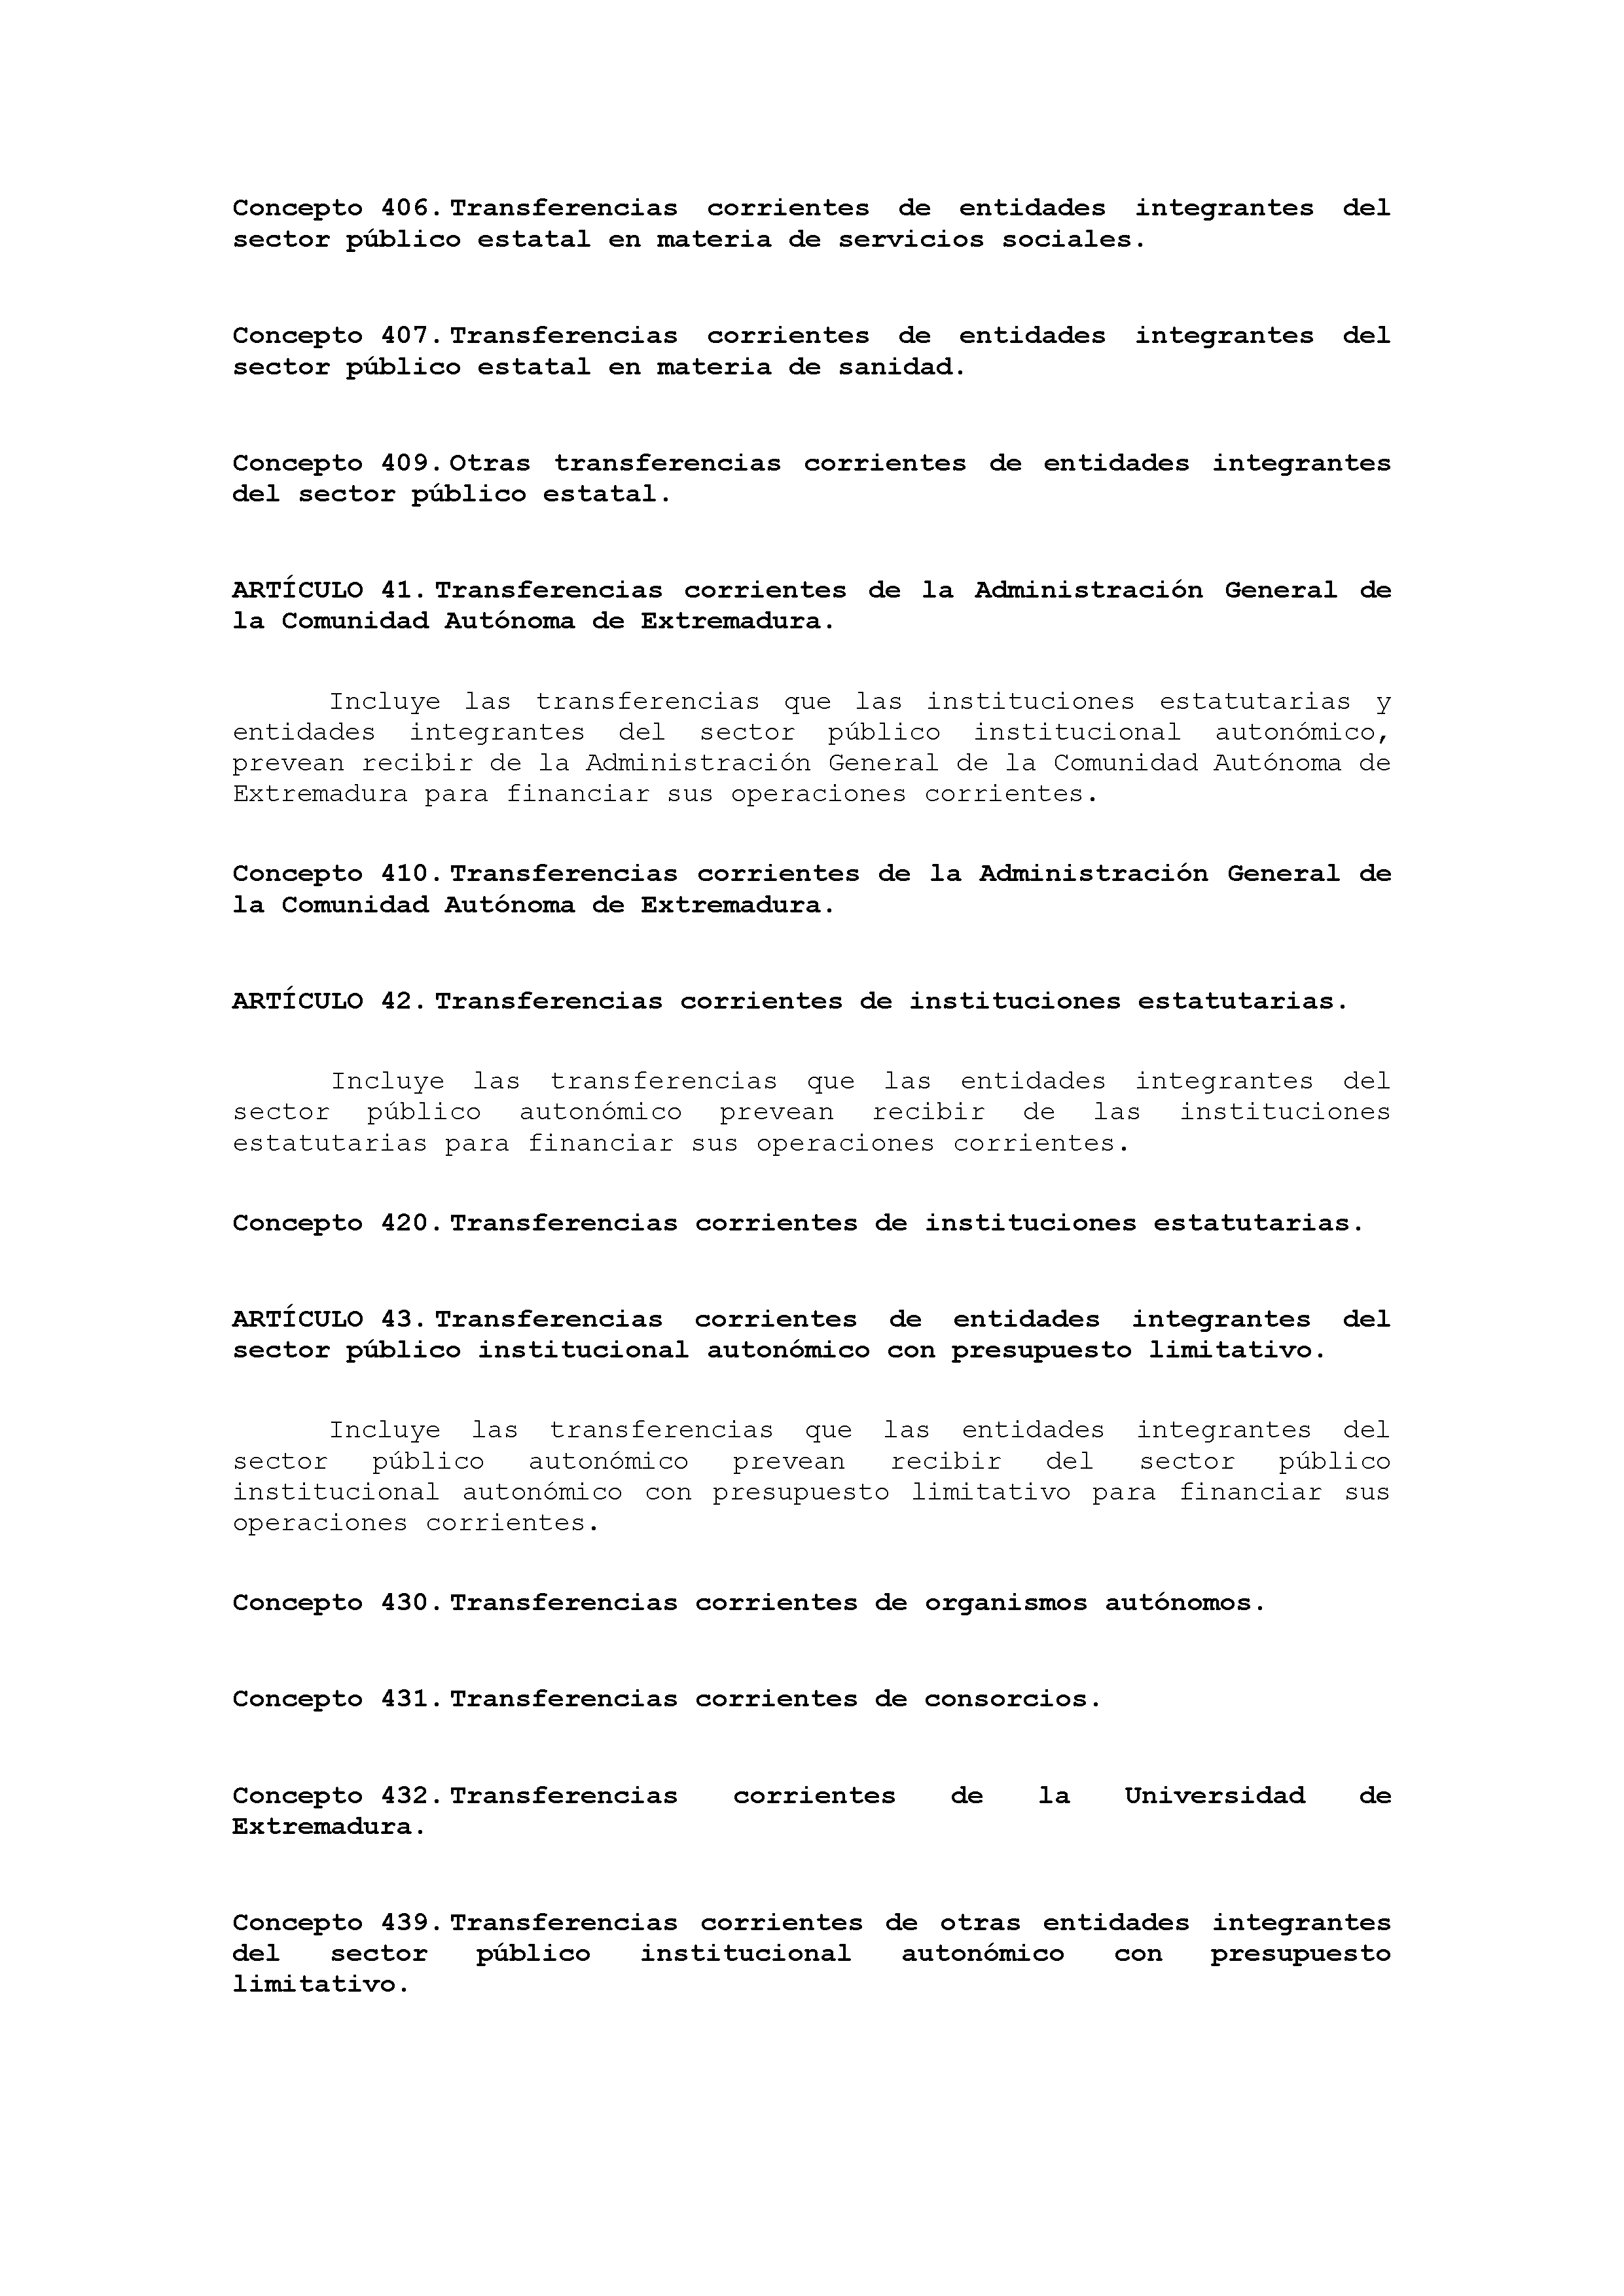 ANEXO VIII CÓDIGO DE LA CLASIFICACIÓN ECONÓMICA DE LOS INGRESOS PÚBLICOS Pag 12